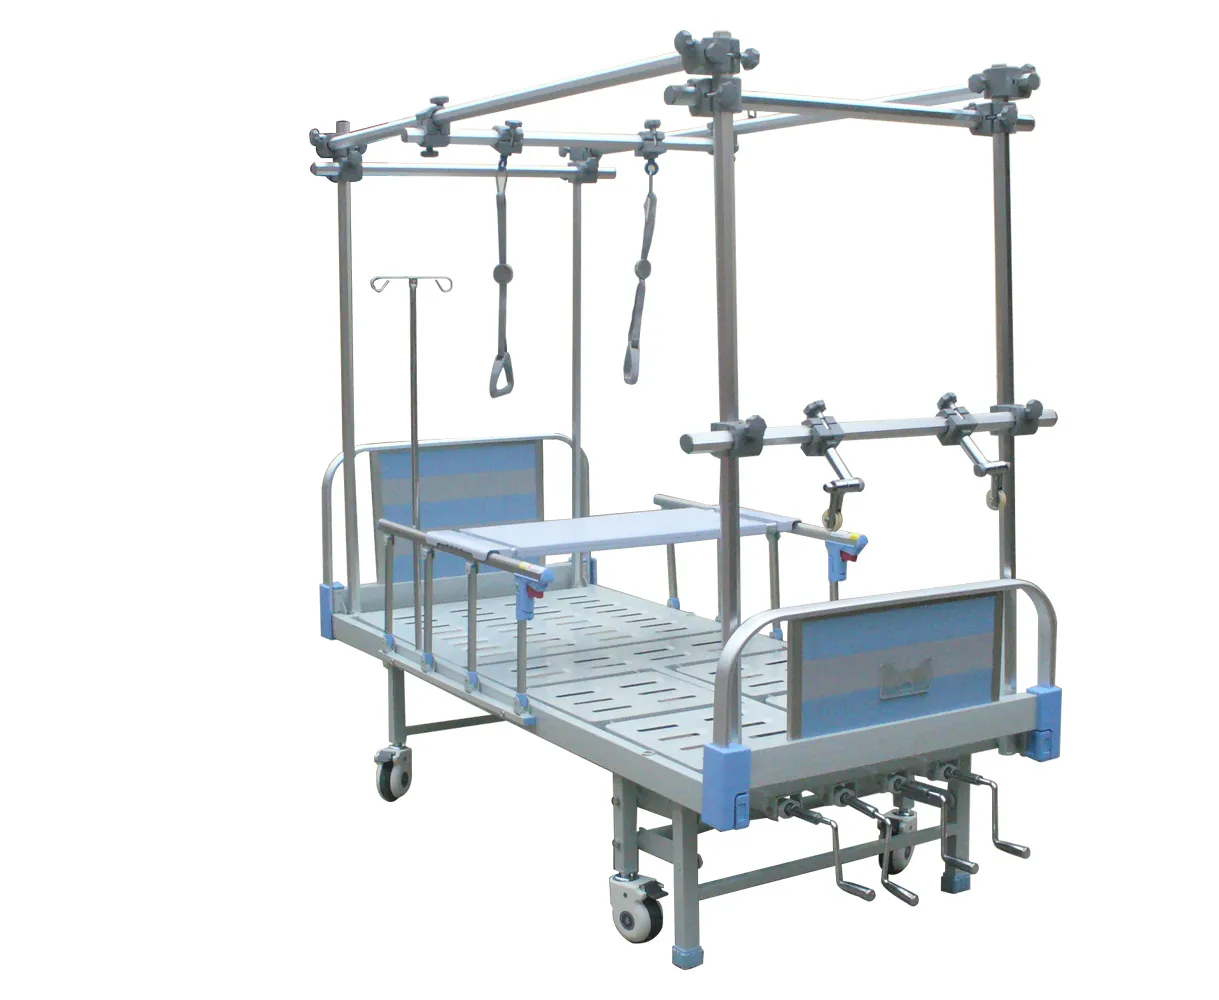 अस्पतालों में बहुक्रियाशील ऑर्थोपेडिक कर्षण बिस्तर विभिन्न प्रकार के होते हैं